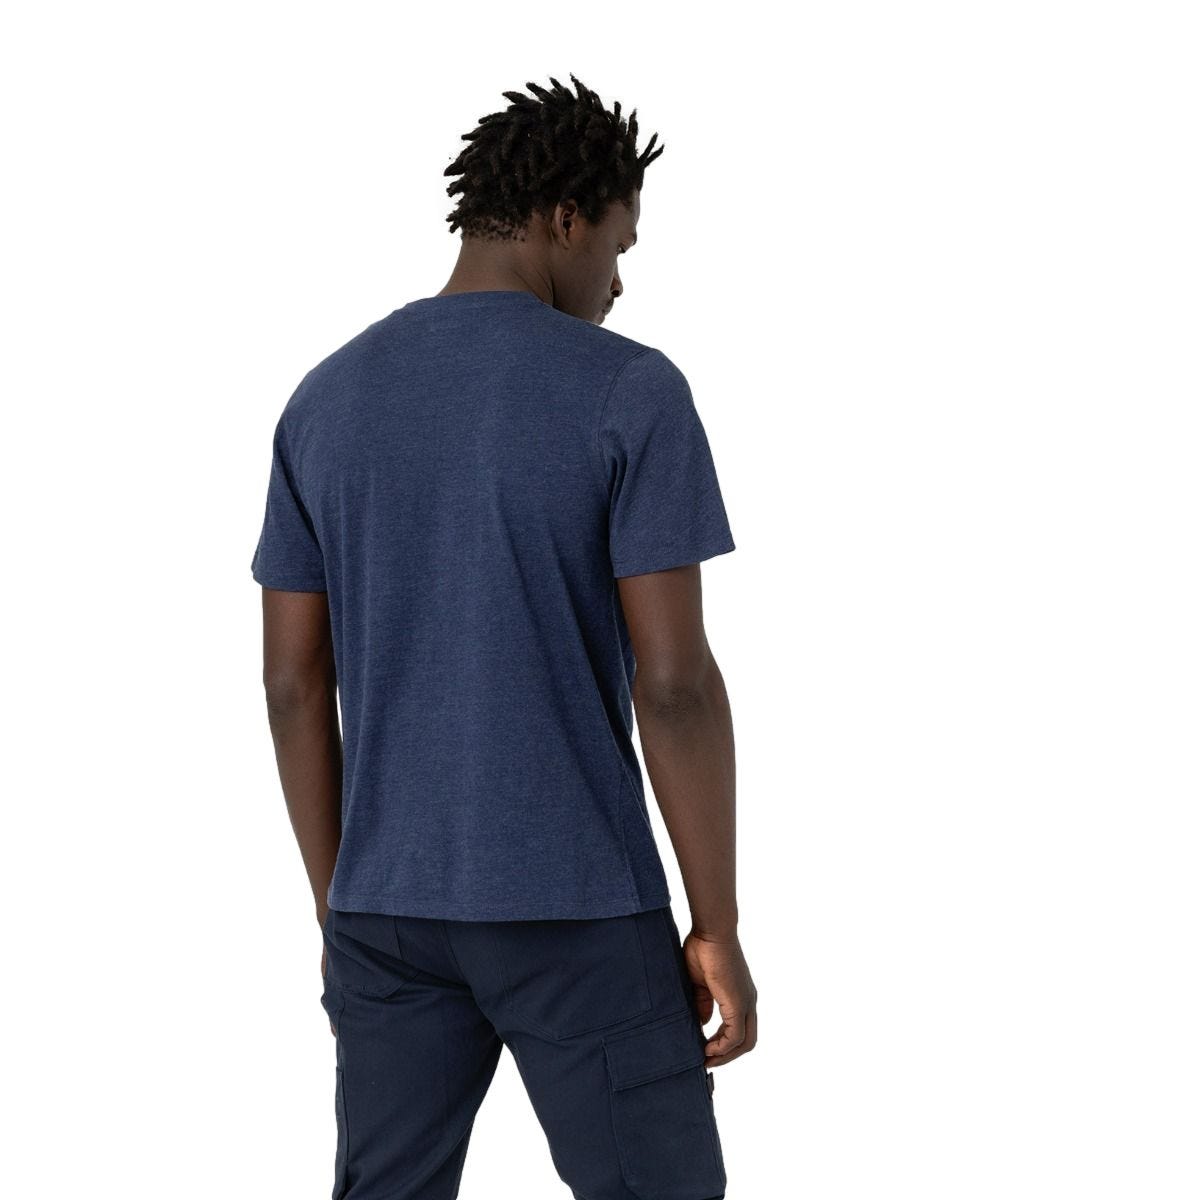 T-shirt à manches courtes pour homme Stanton bleu marine - Dickies - Taille L 1